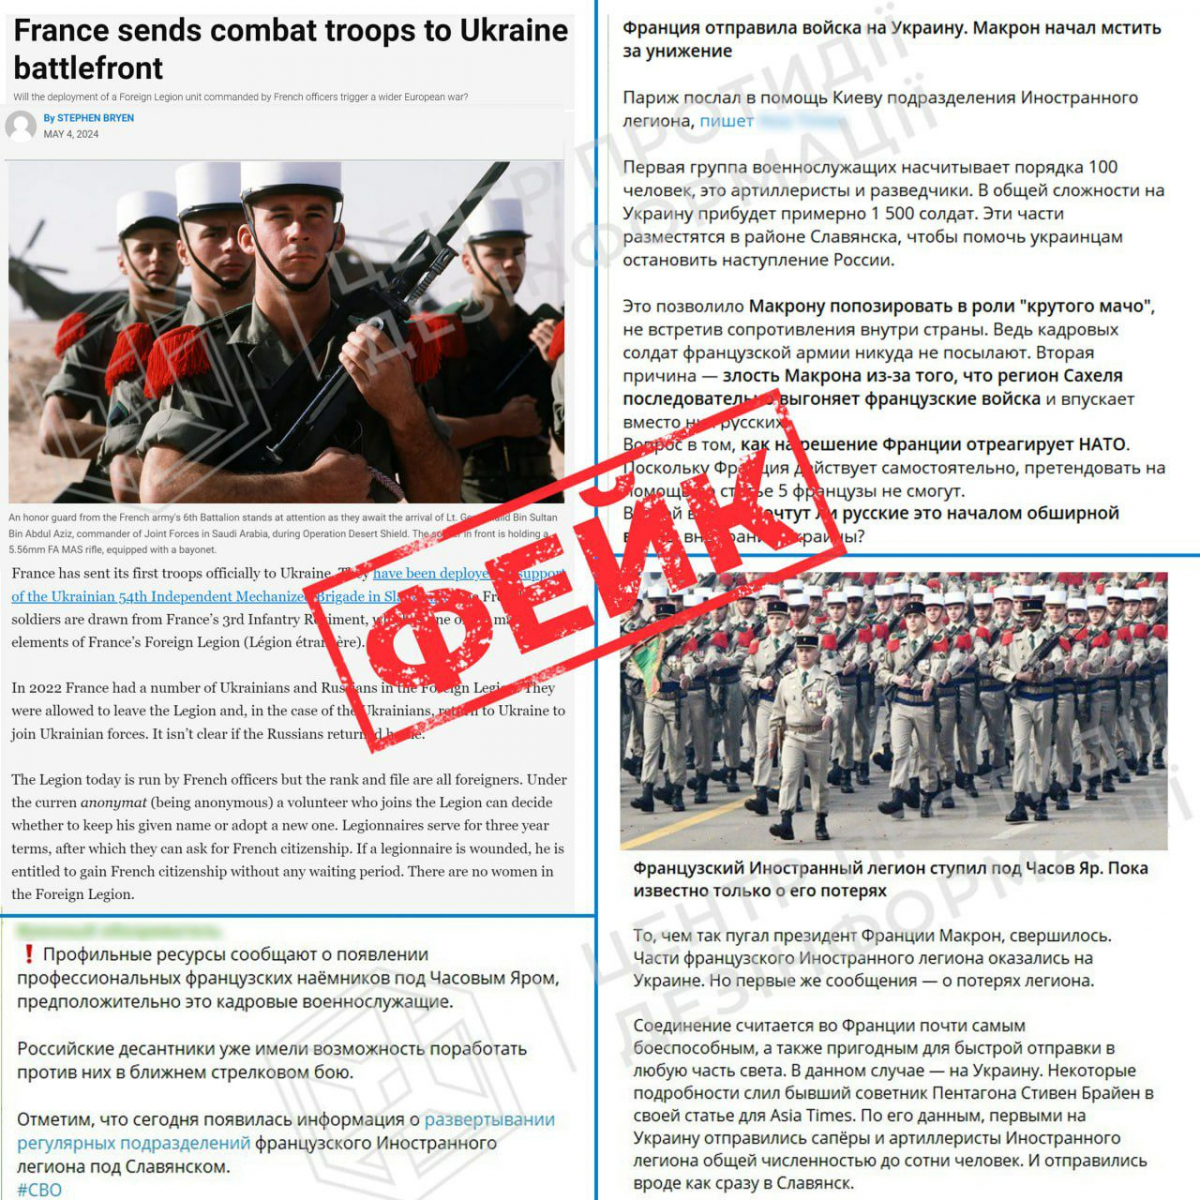 Інформація про відправку французьких військ в Україну – фейк